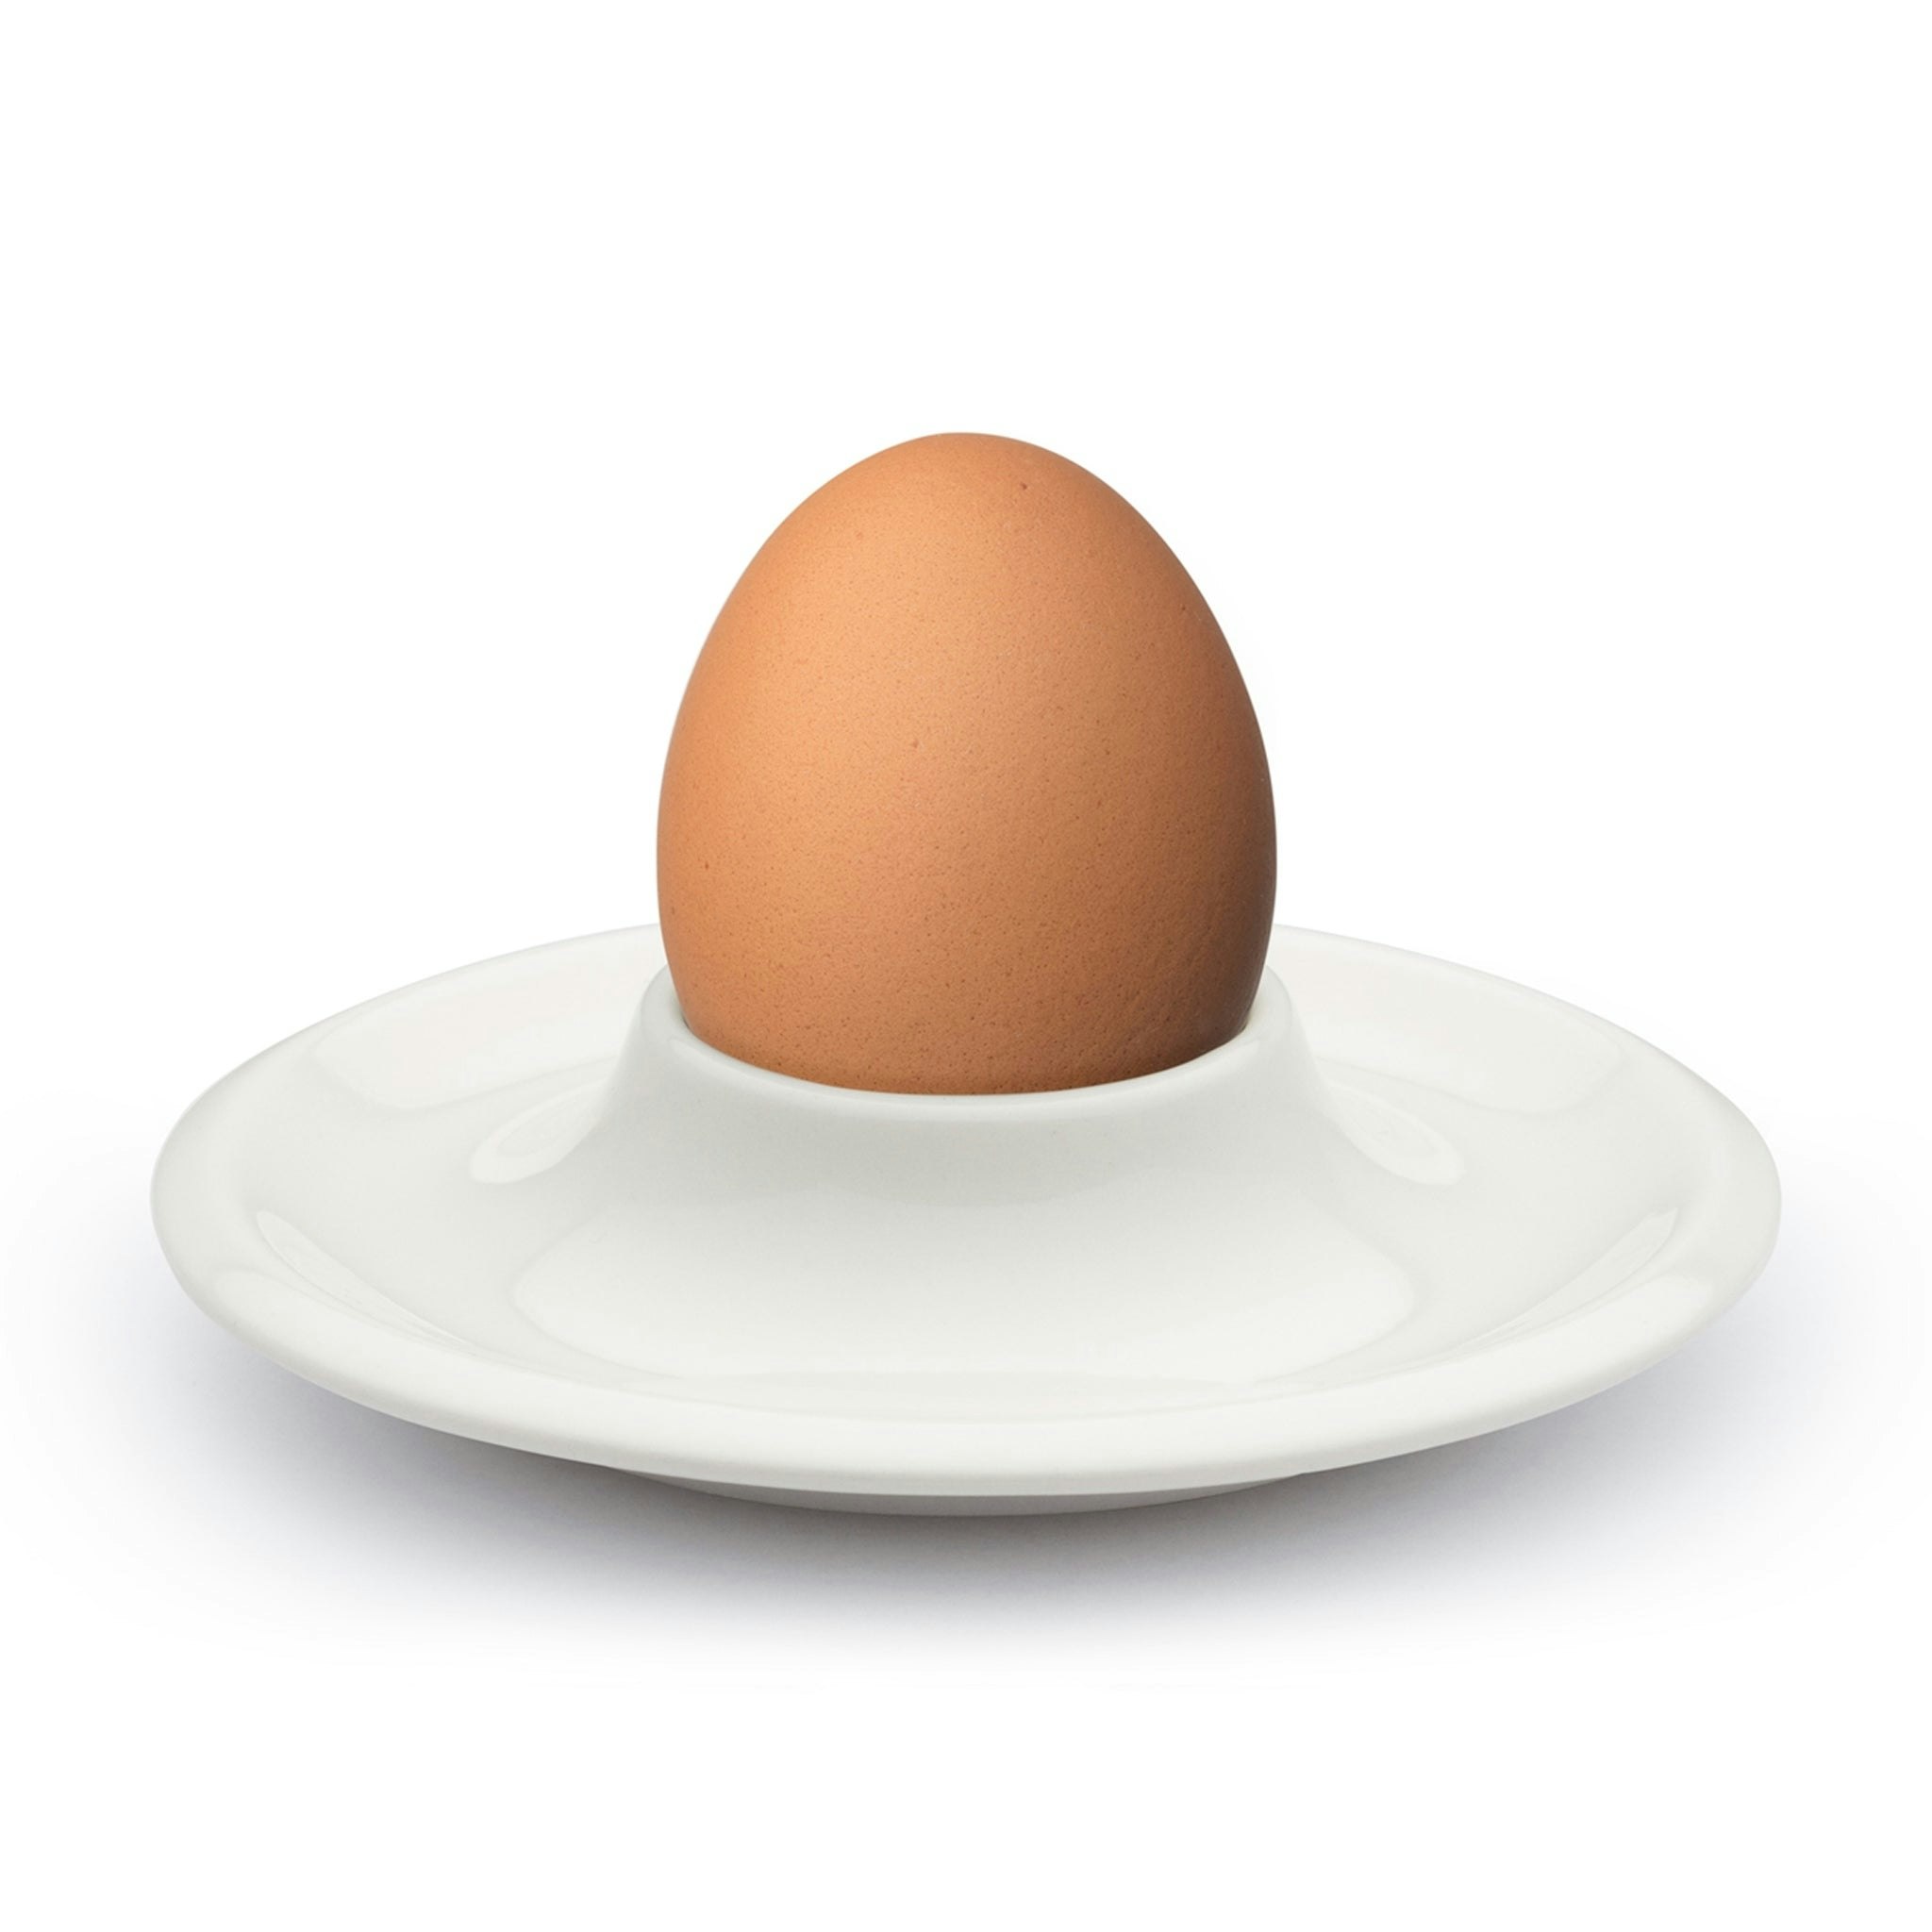 Raami Egg Cup by Iittala